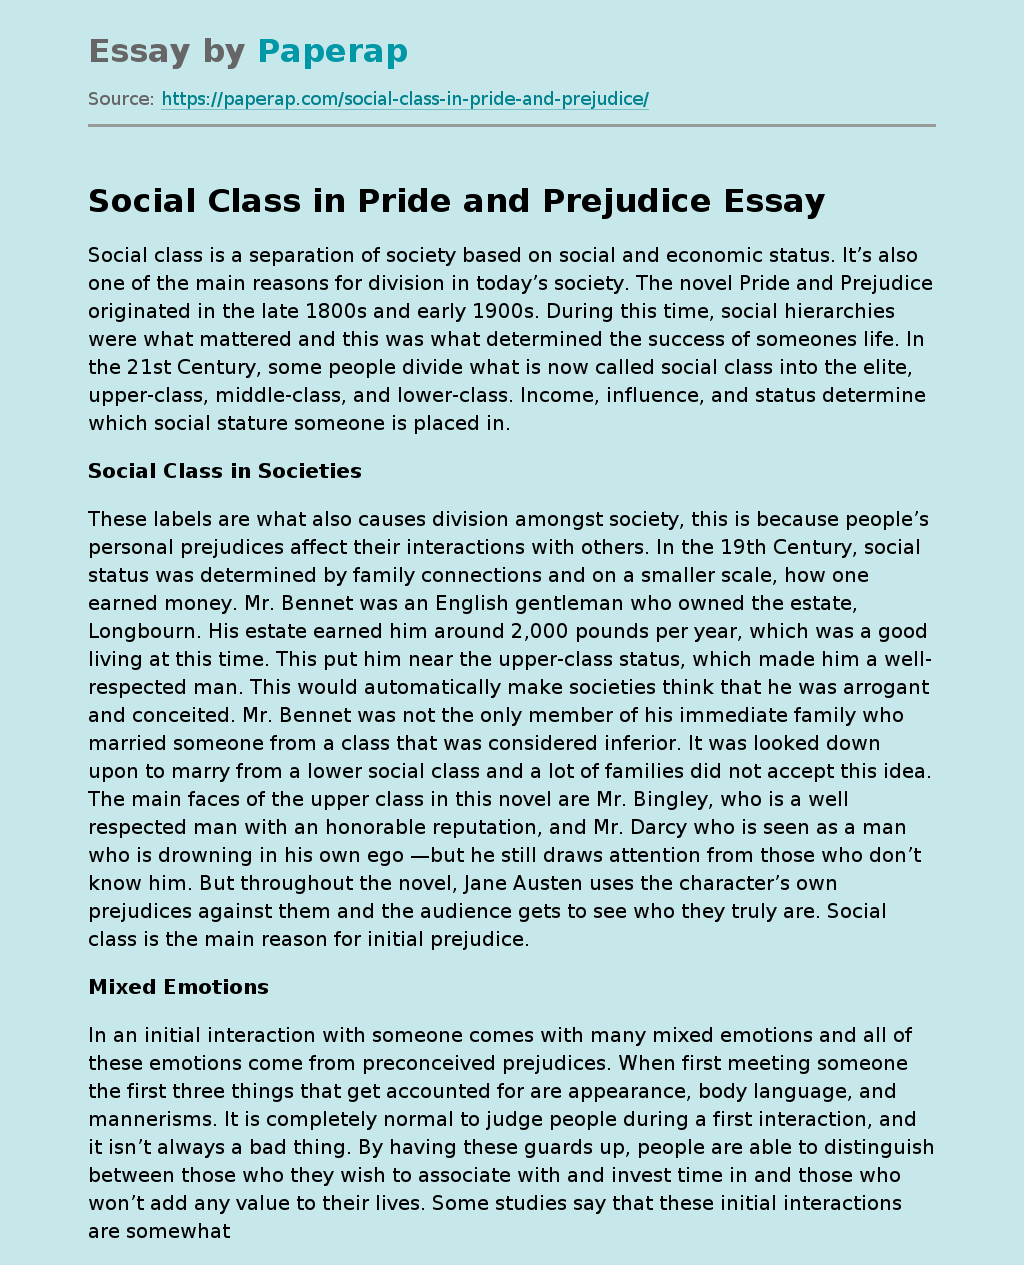 Social Class in Pride and Prejudice